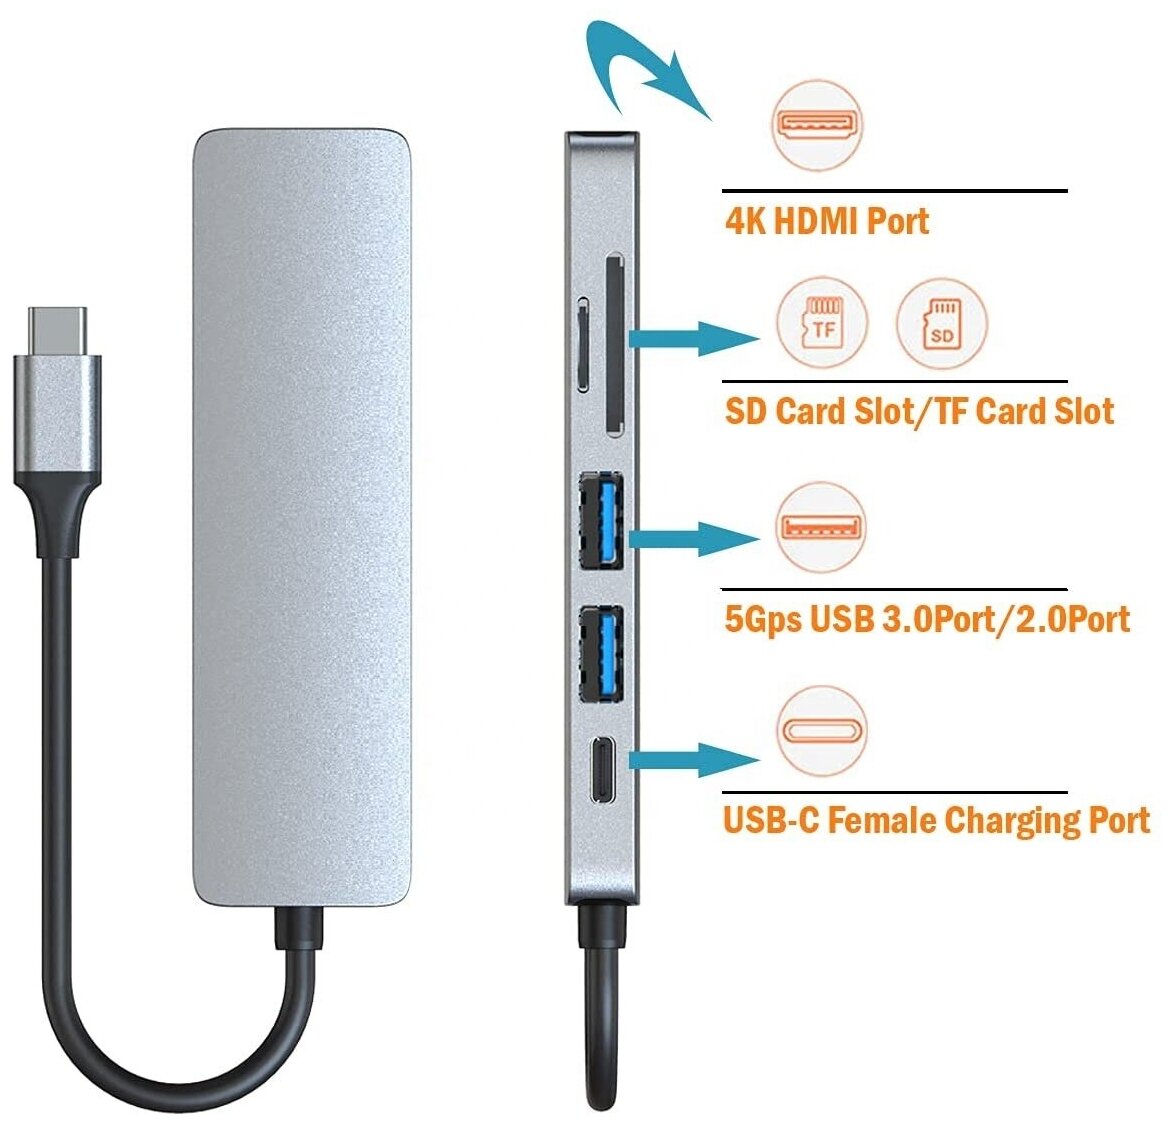 Адаптер/Хаб/Переходник/Концентратор USB-C HUB 6 в 1 с 2 х USB 3.0, HDMI 4K, PD Зарядка до 87W для MacBook Pro/Air